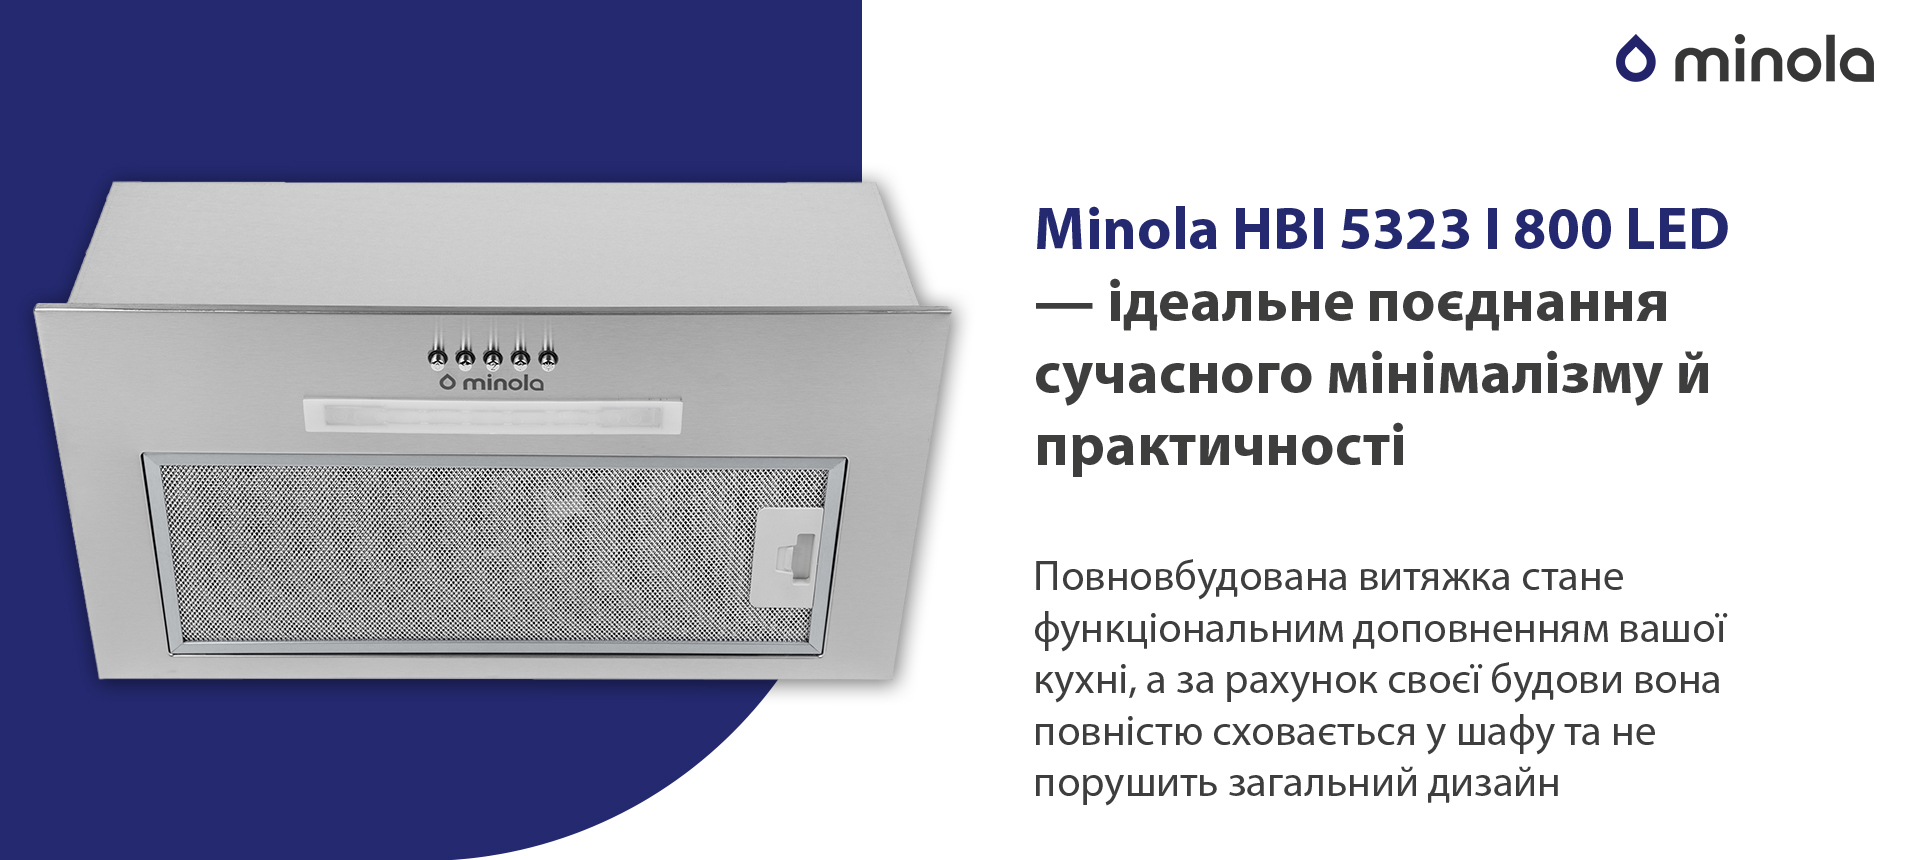 Minola HBI 5323 I 800 LED в магазине в Киеве - фото 10